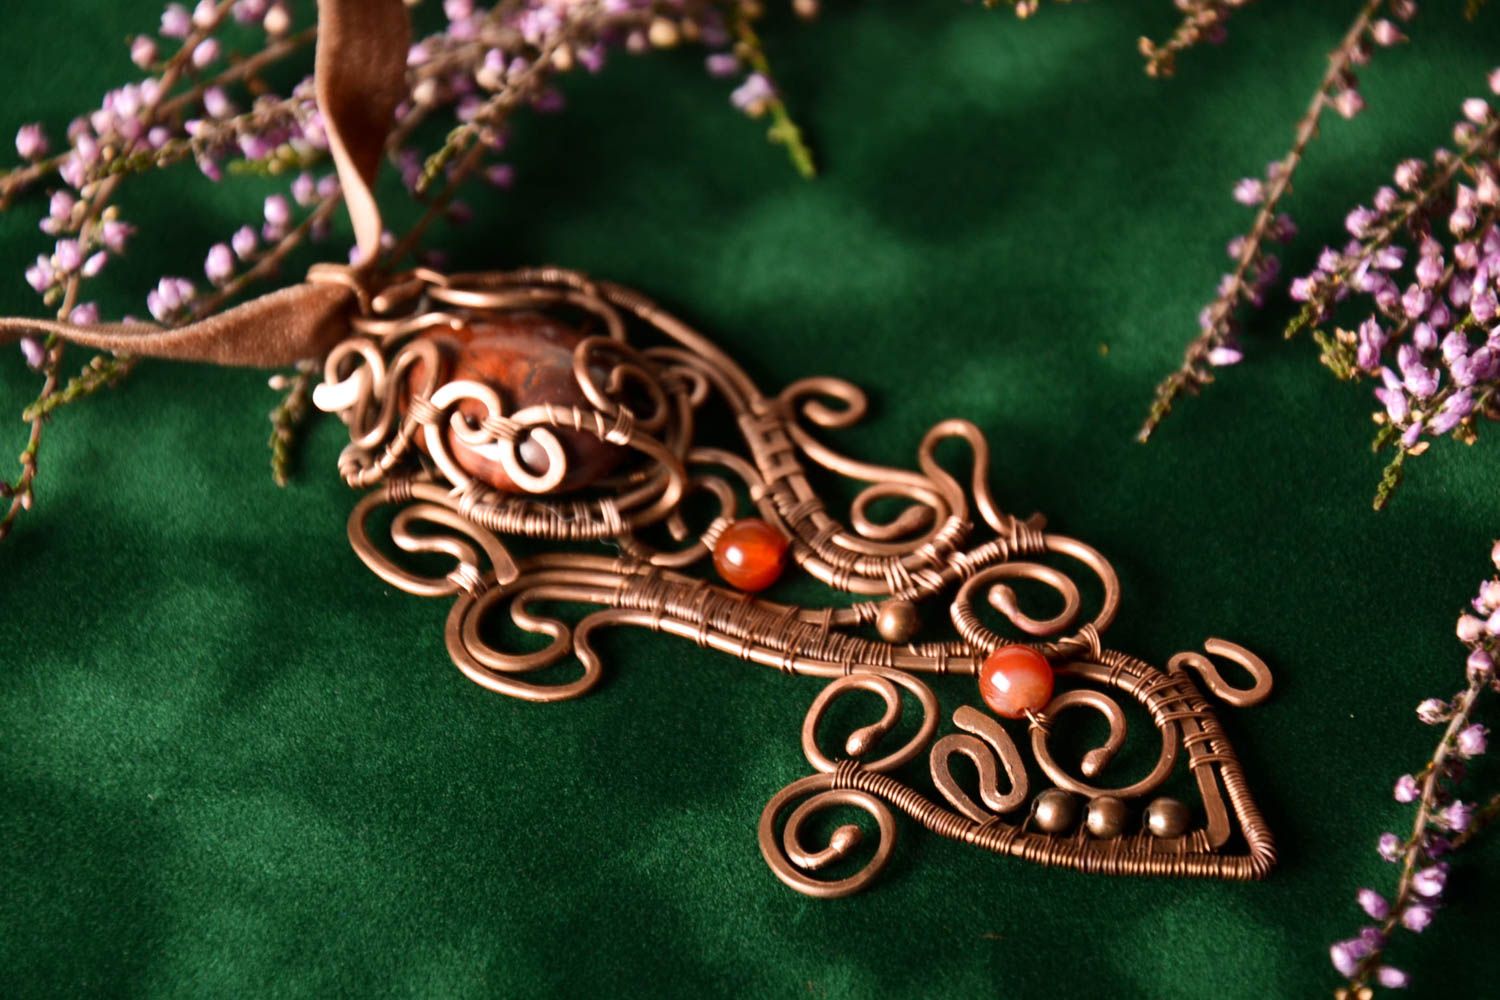 Авторское украшение хэнд мейд кулон на шею украшение из натуральных камней фото 1